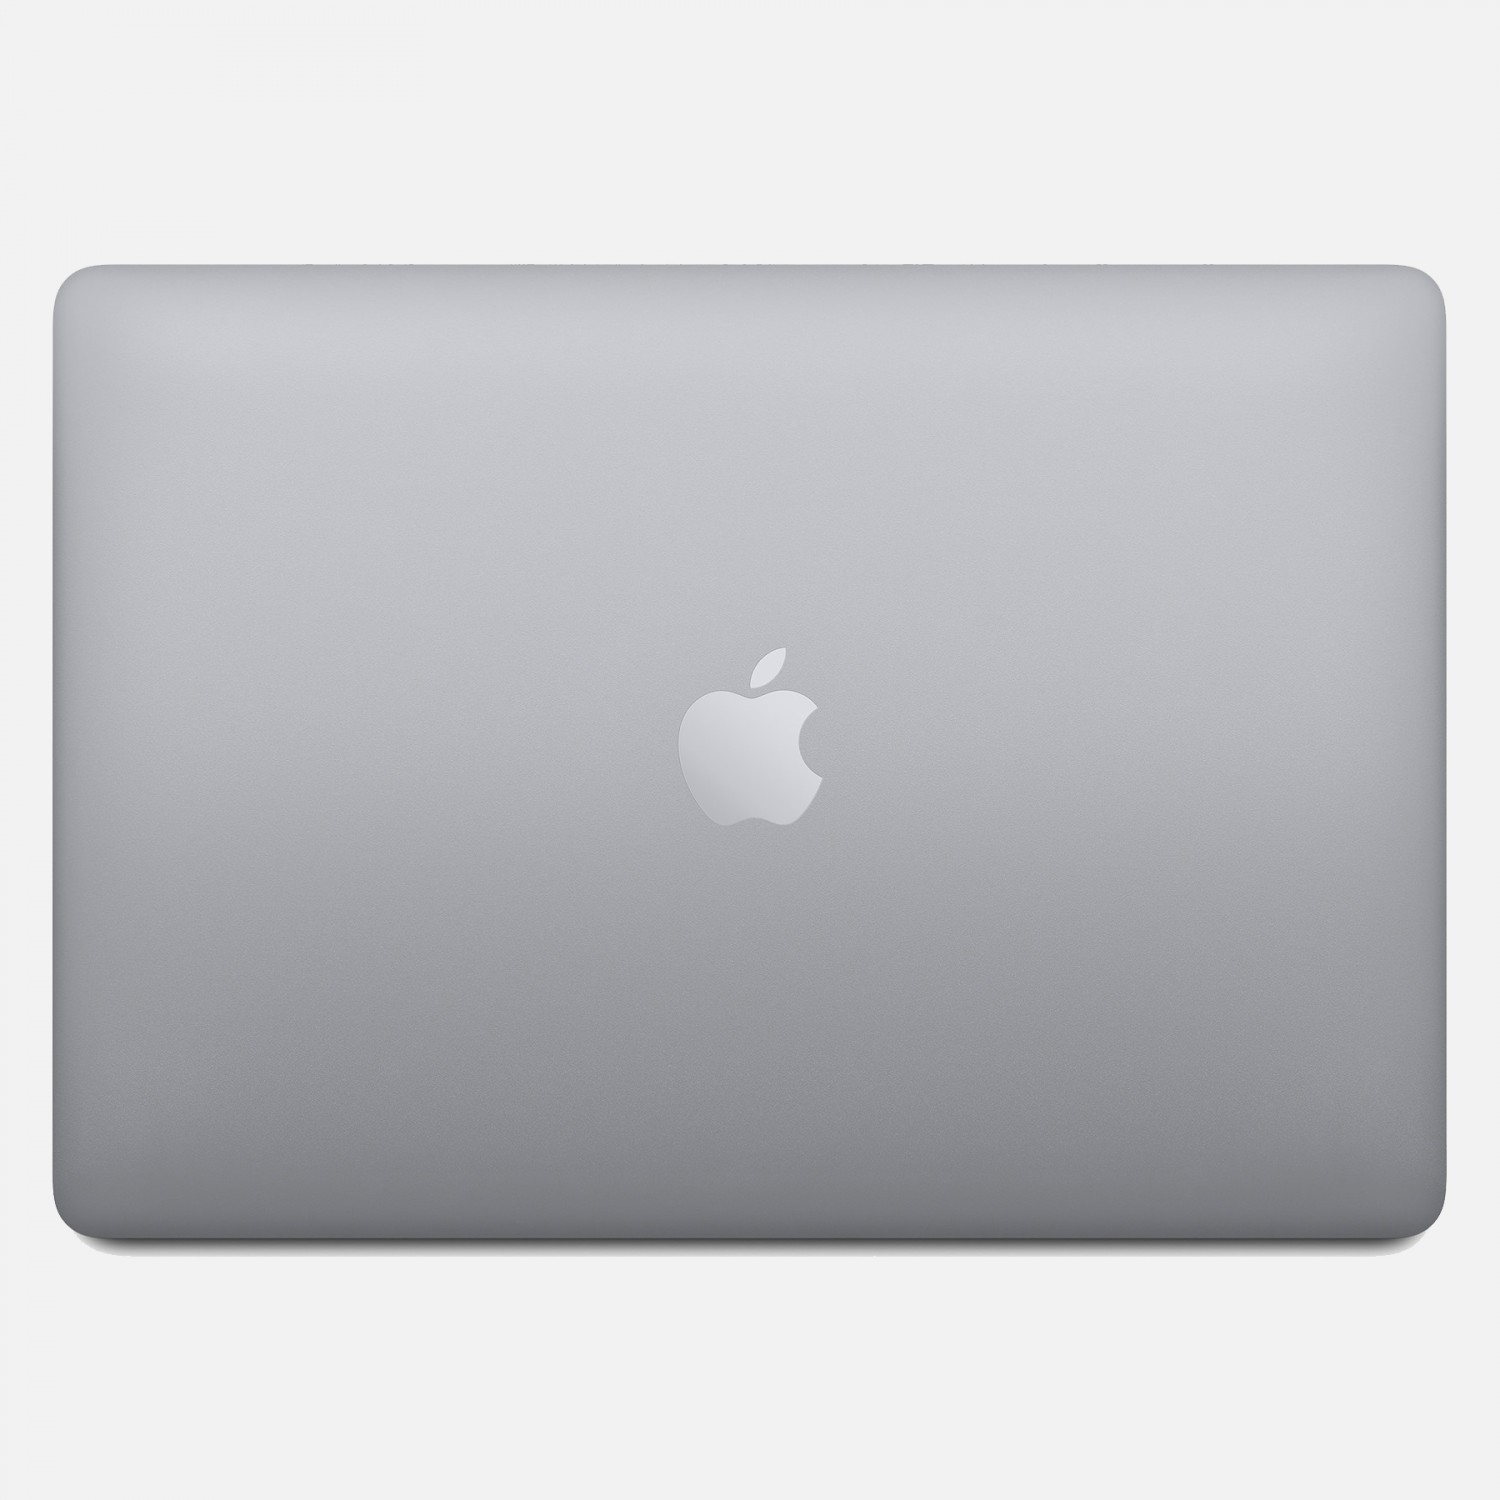 لپ تاپ Apple MacBook Pro 13 2020 CTO - Space Grey - C-5